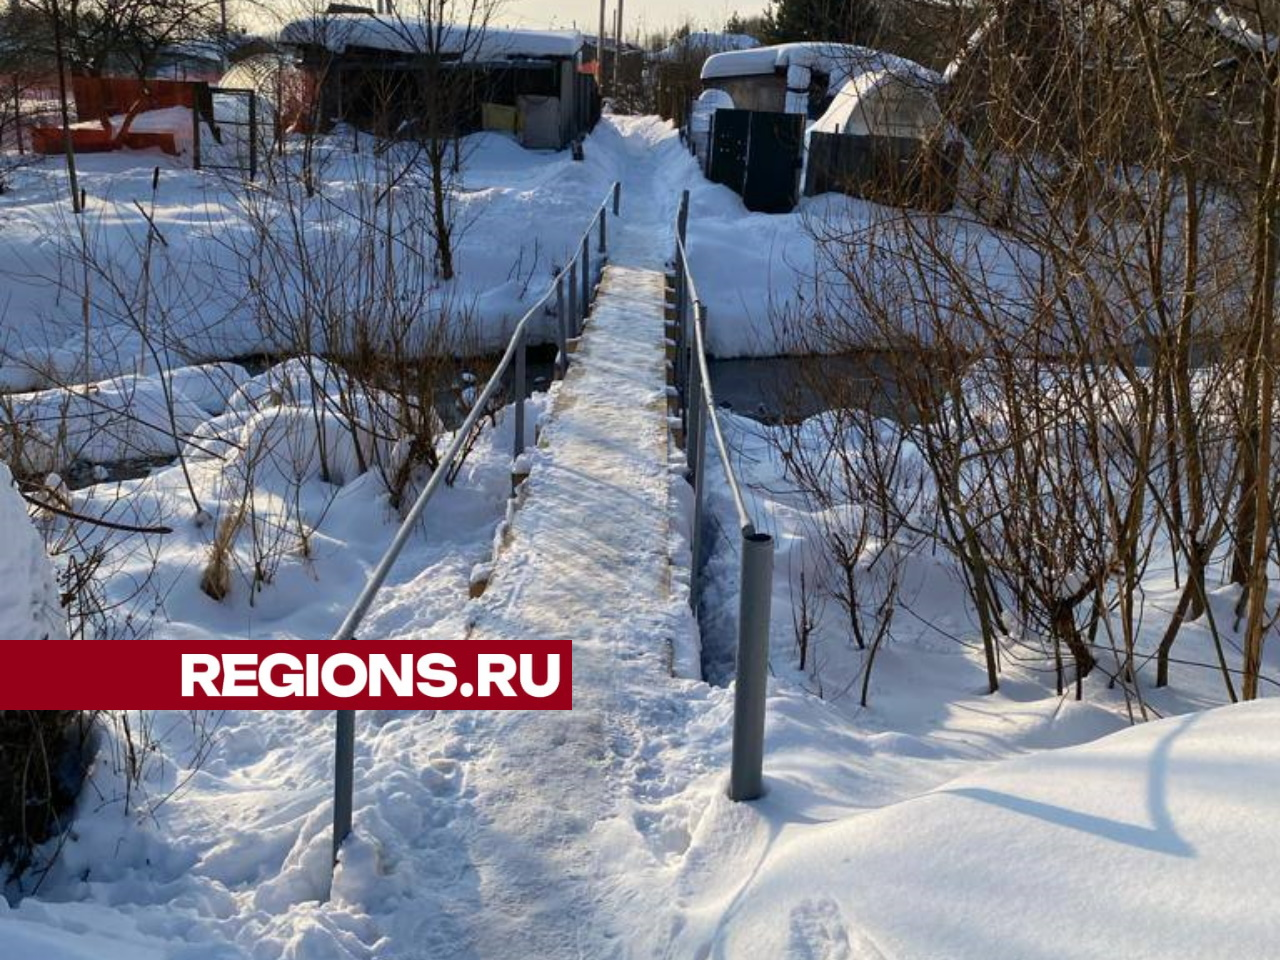 Жители села Шарапово поблагодарили депутата за отремонтированный мост